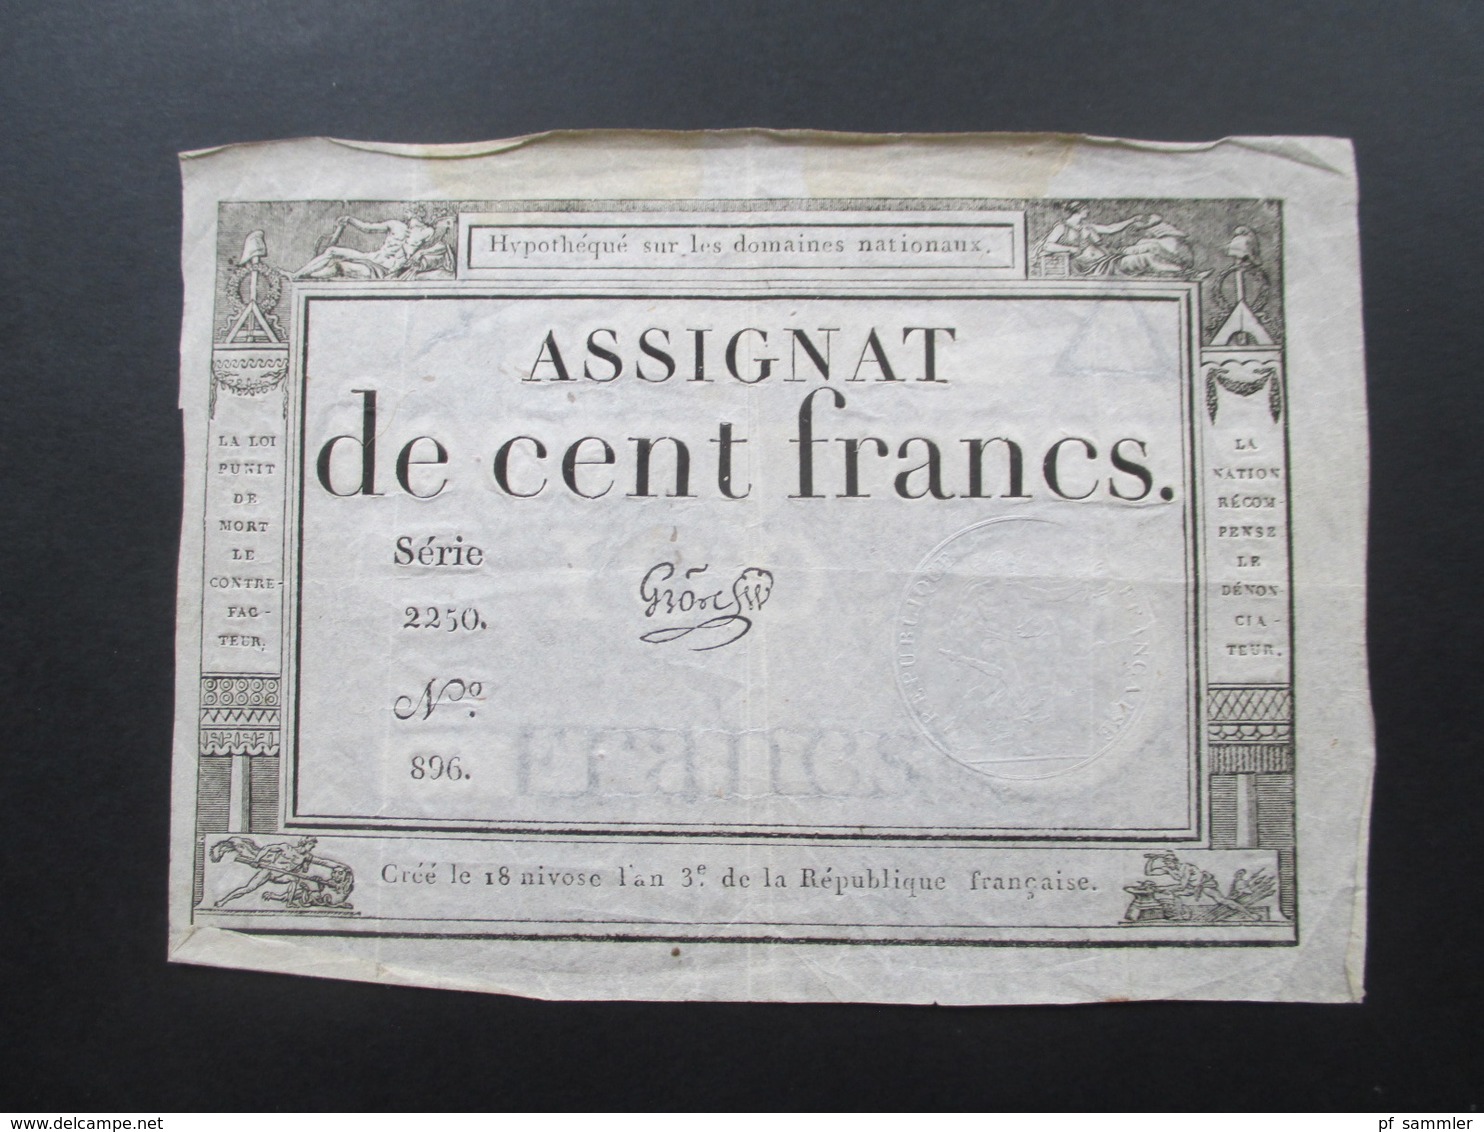 Frankreich Assignat De Cent Francs Serie 2250 No 896. Cree Le 18 Nivose L'an 3e Republique Francaise - ...-1889 Circulated During XIXth